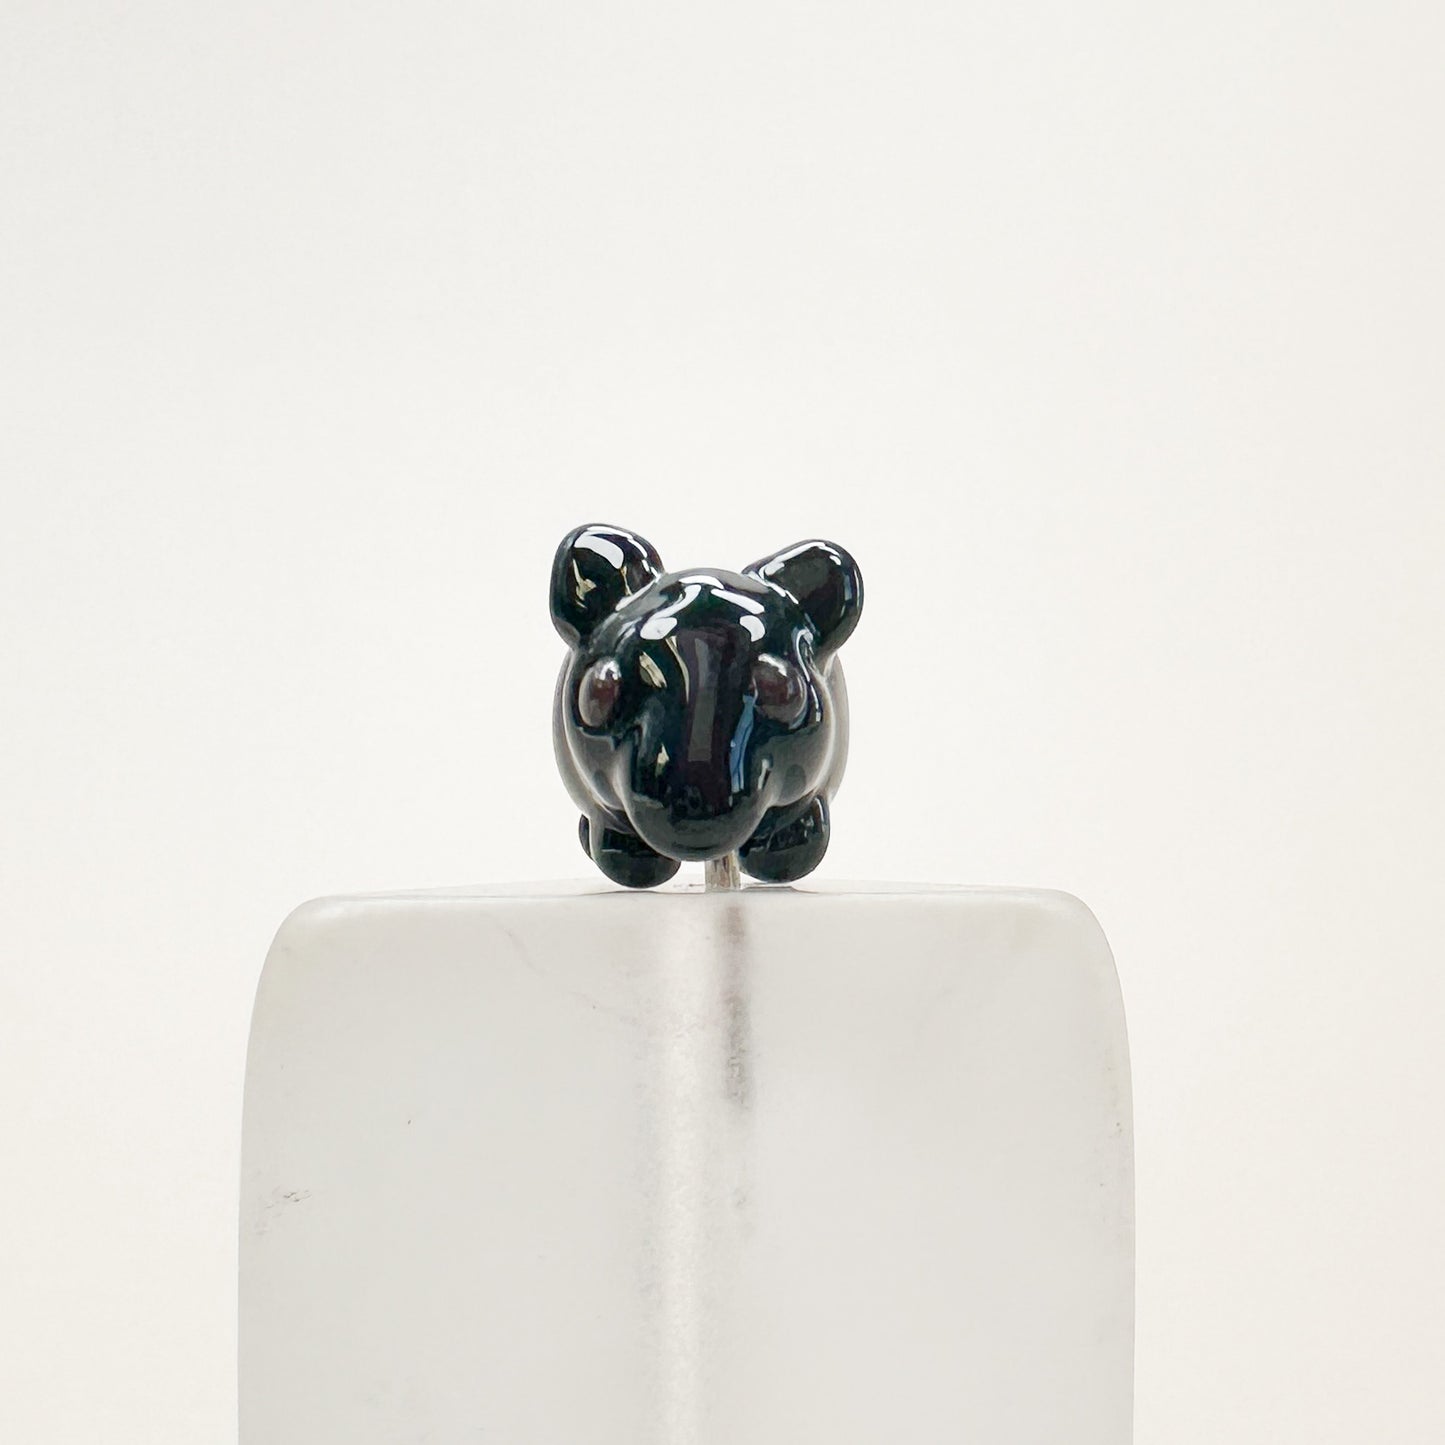 Chibi Handmade Glass Beads -Tapir - 1 pc.-The Bead Gallery Honolulu